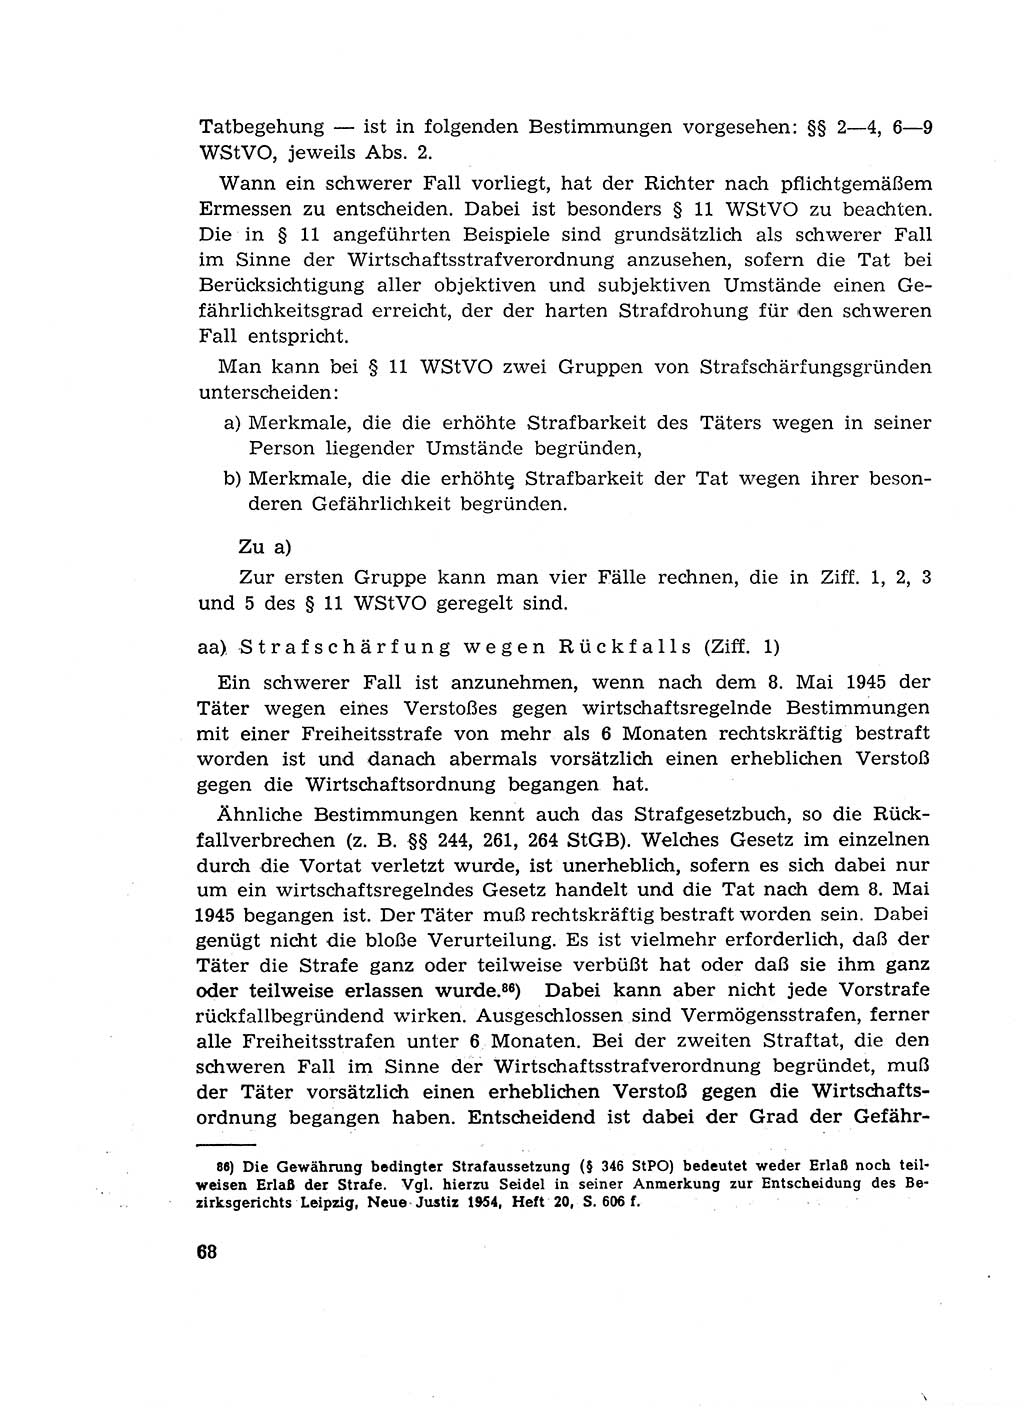 Materialien zum Strafrecht, Besonderer Teil [Deutsche Demokratische Republik (DDR)] 1955, Seite 68 (Mat. Strafr. BT DDR 1955, S. 68)